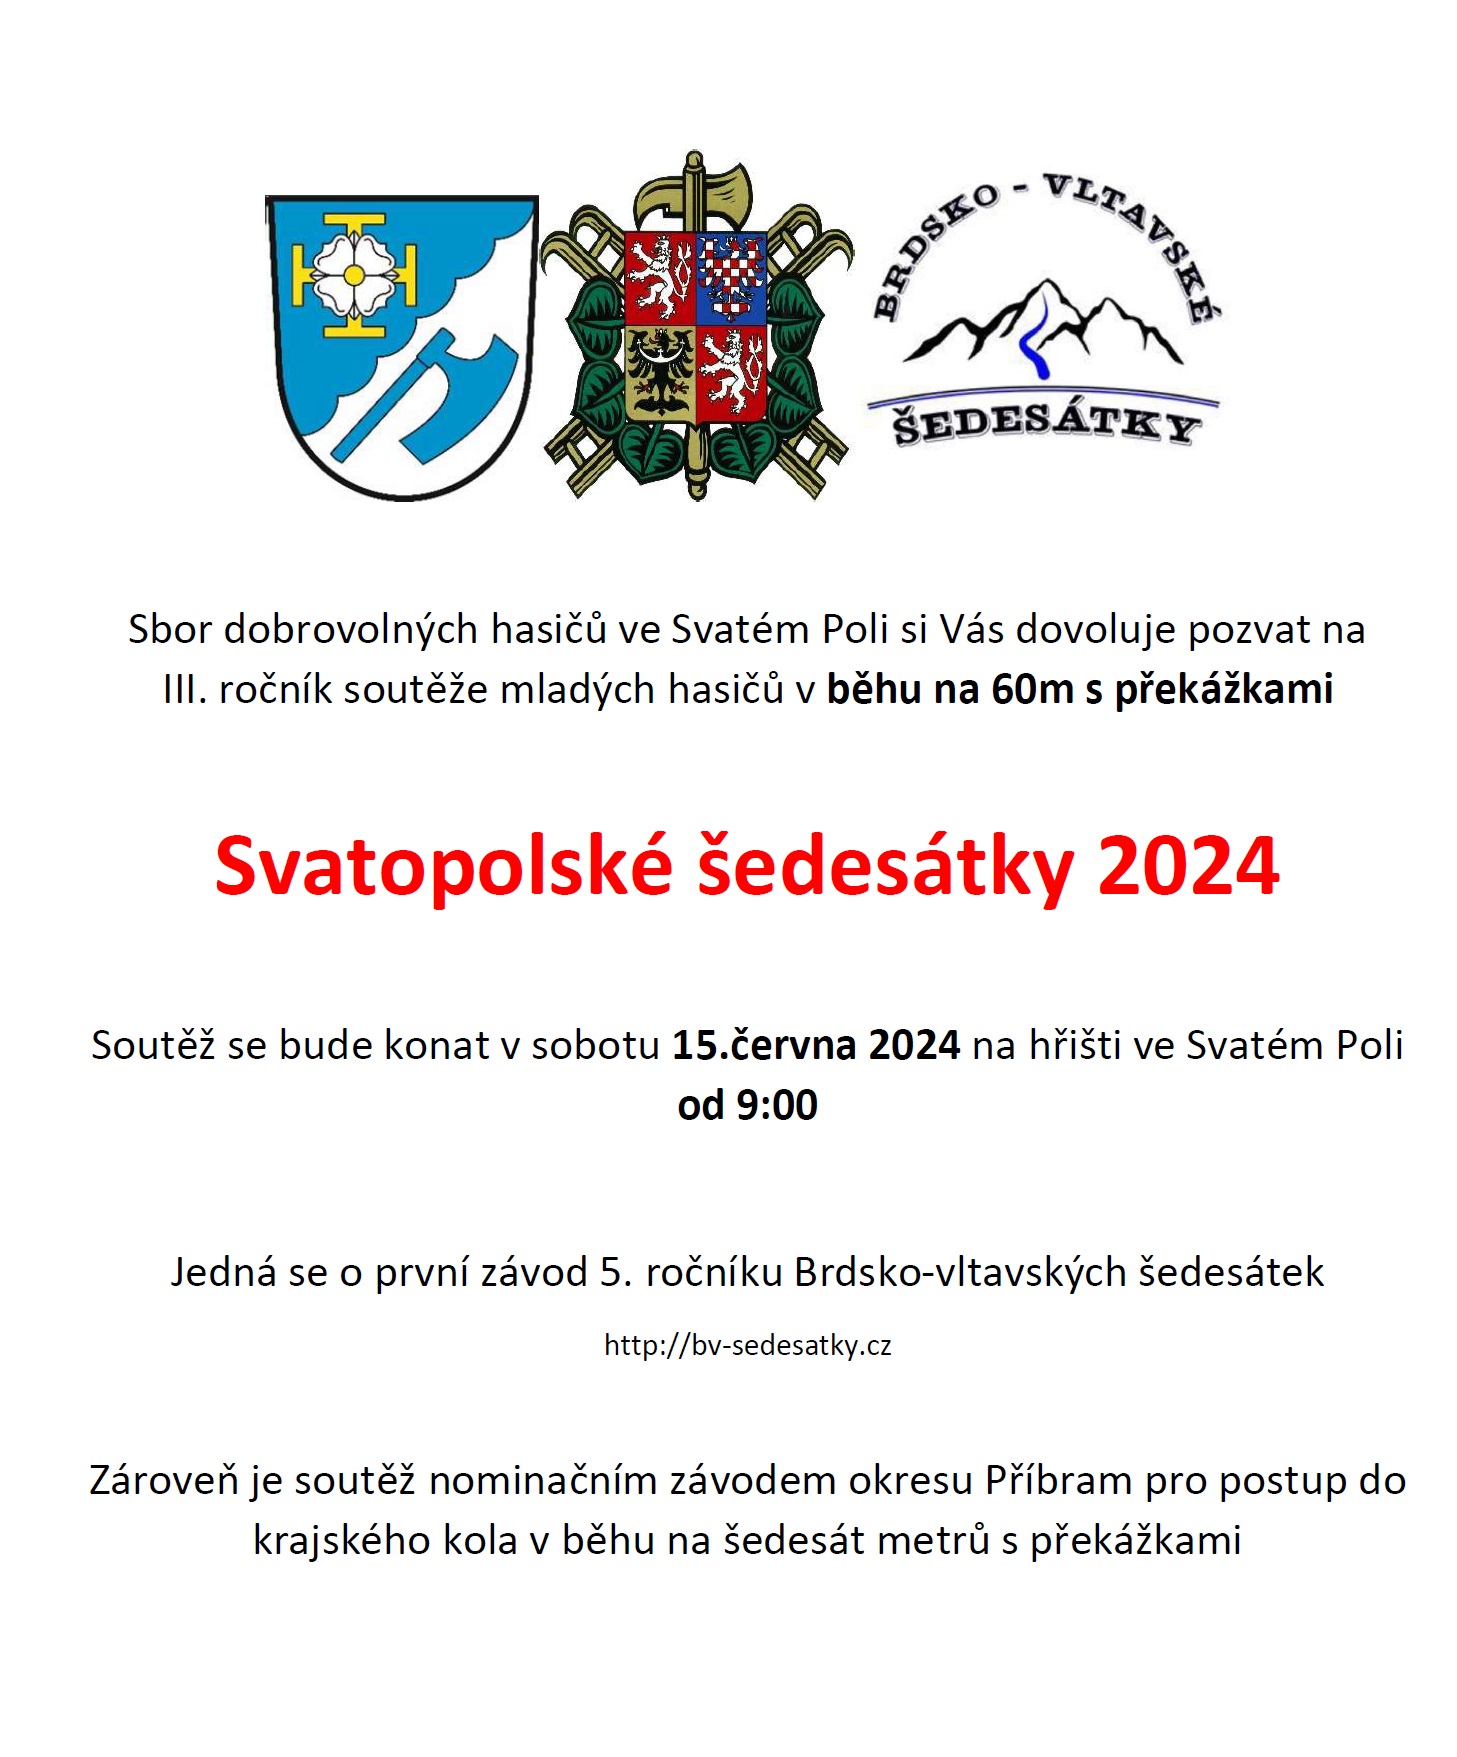 Svatopolské šedesátky 2024